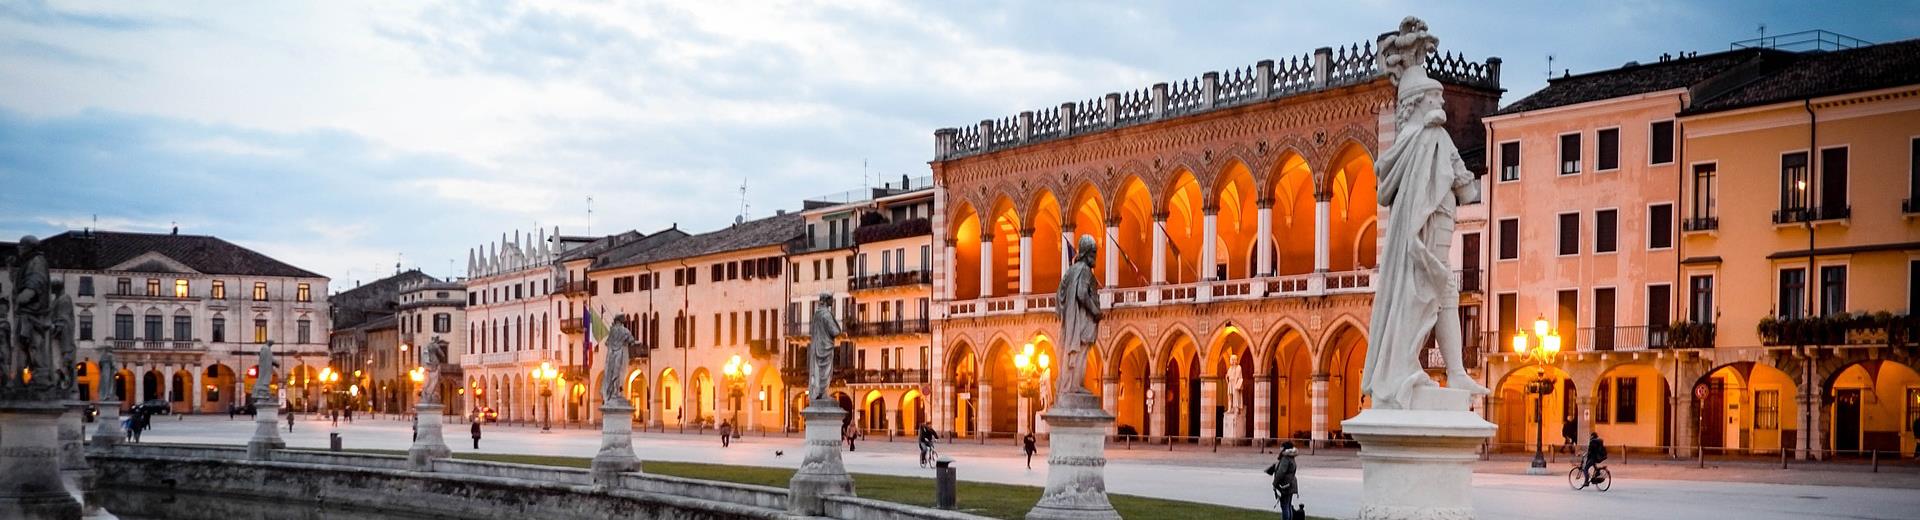 Cerchi un hotel a Padova in posizione centrale per partire alla scoperta della città? Prenota subito Best Western Hotel Biri!